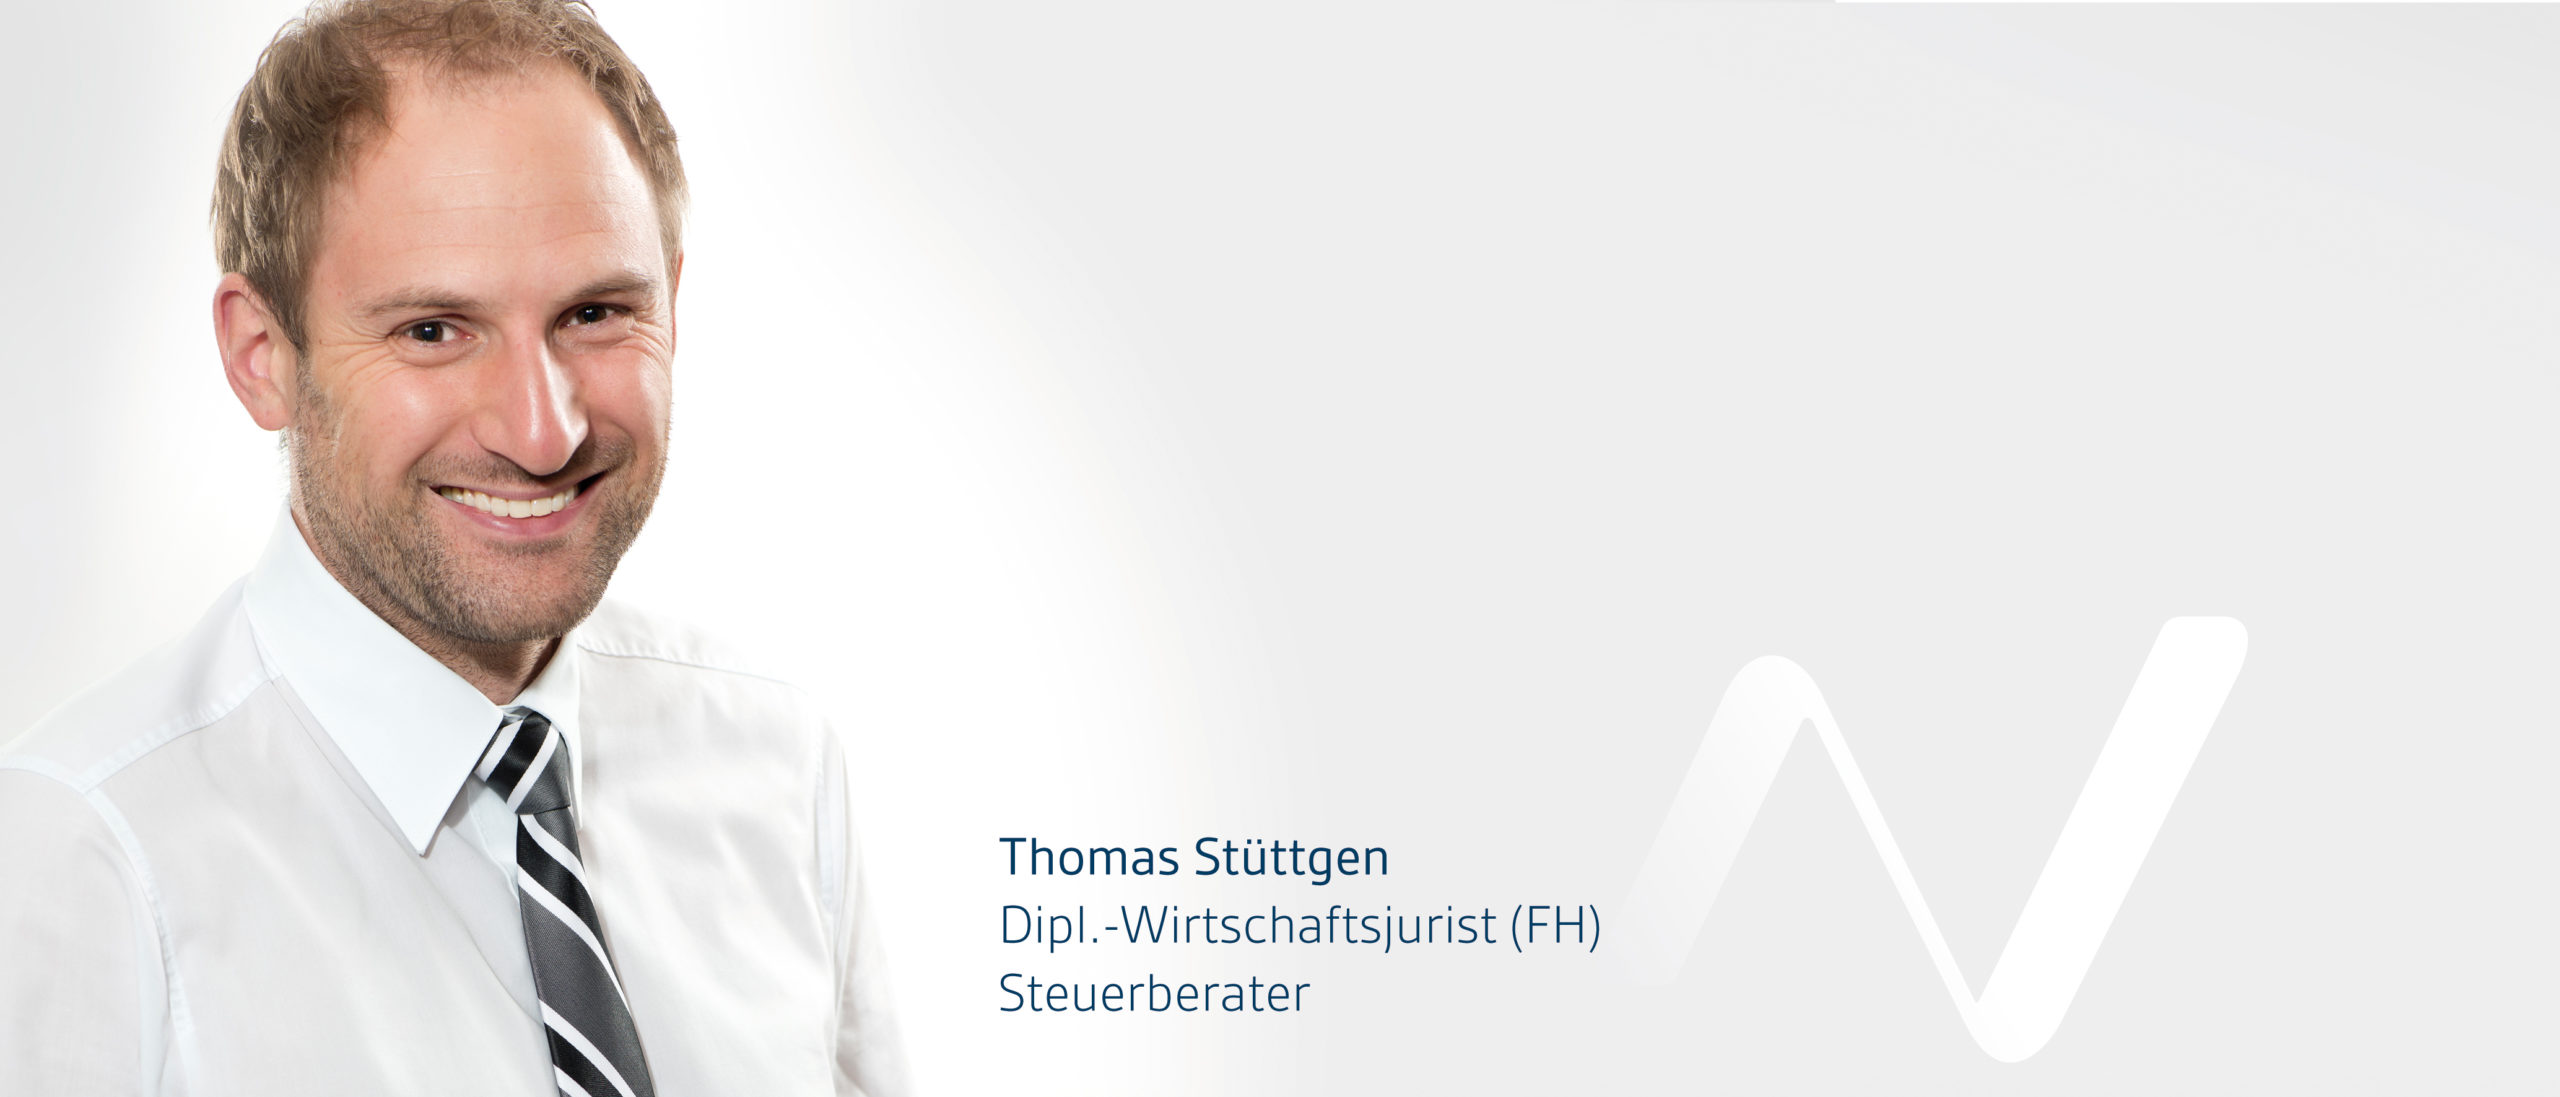 Thomas Stüttgen - Dipl.-Wirtschaftsjurist (FH) - Steuerberater